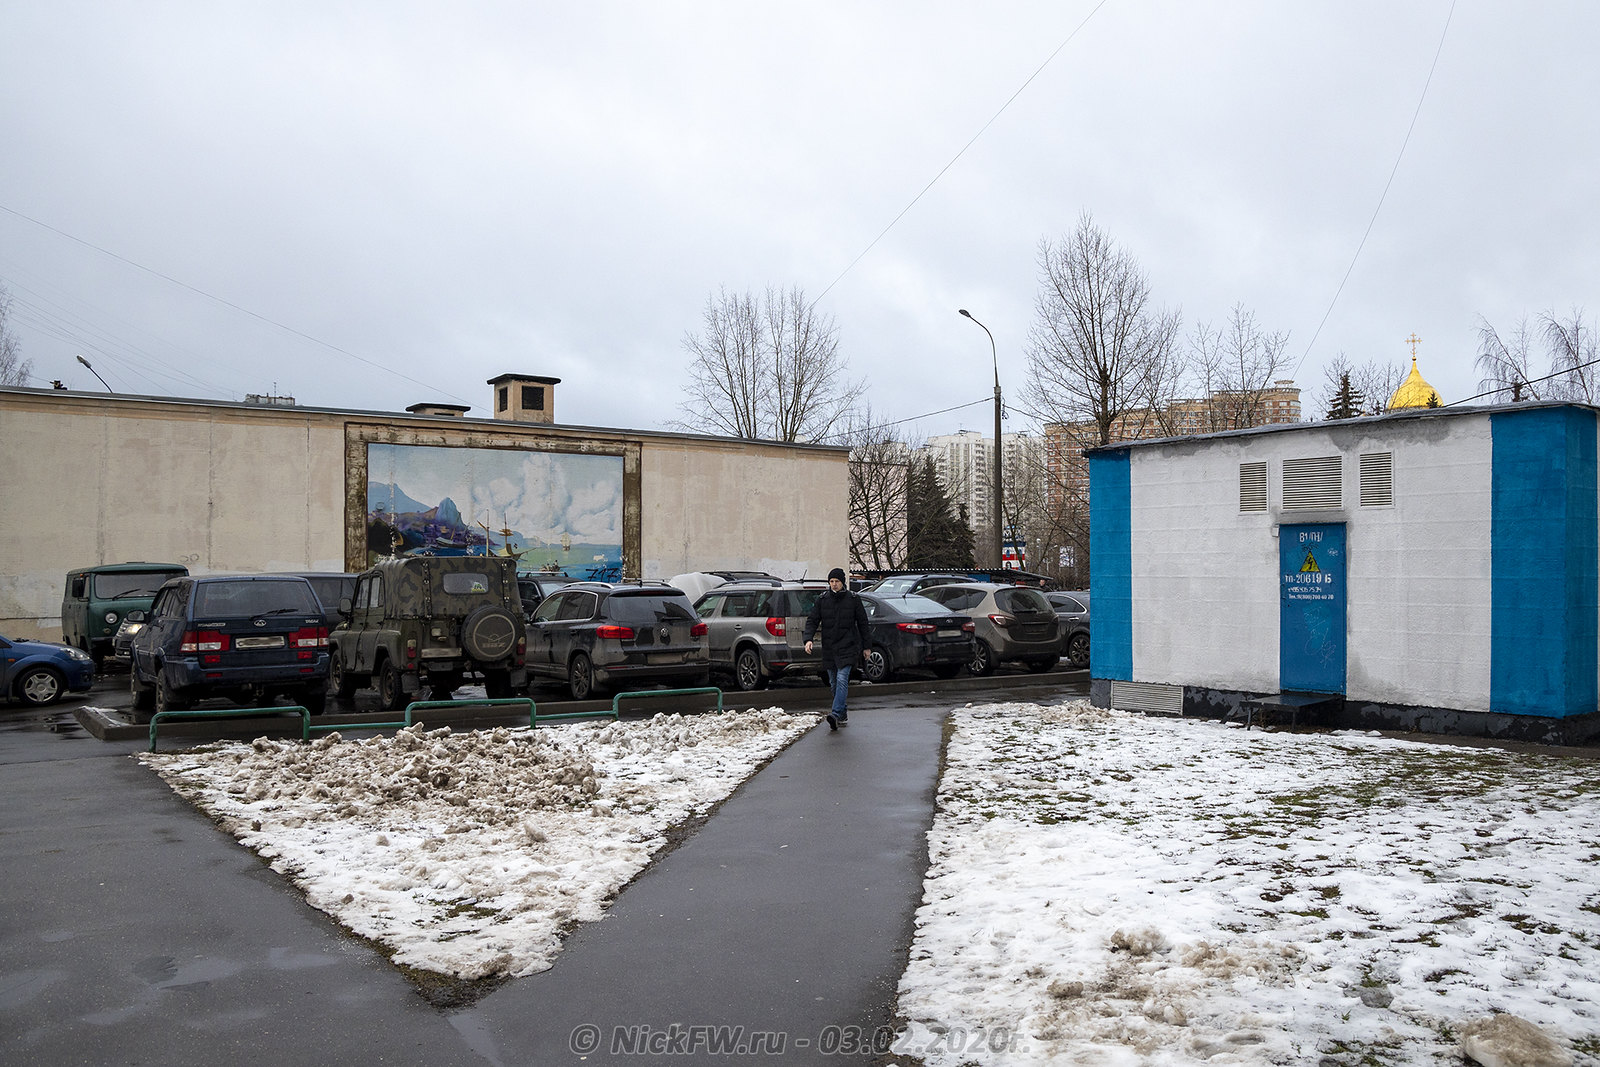 3. ЦТП близ выставочного зала © NickFW.ru - 03.02.2020г.